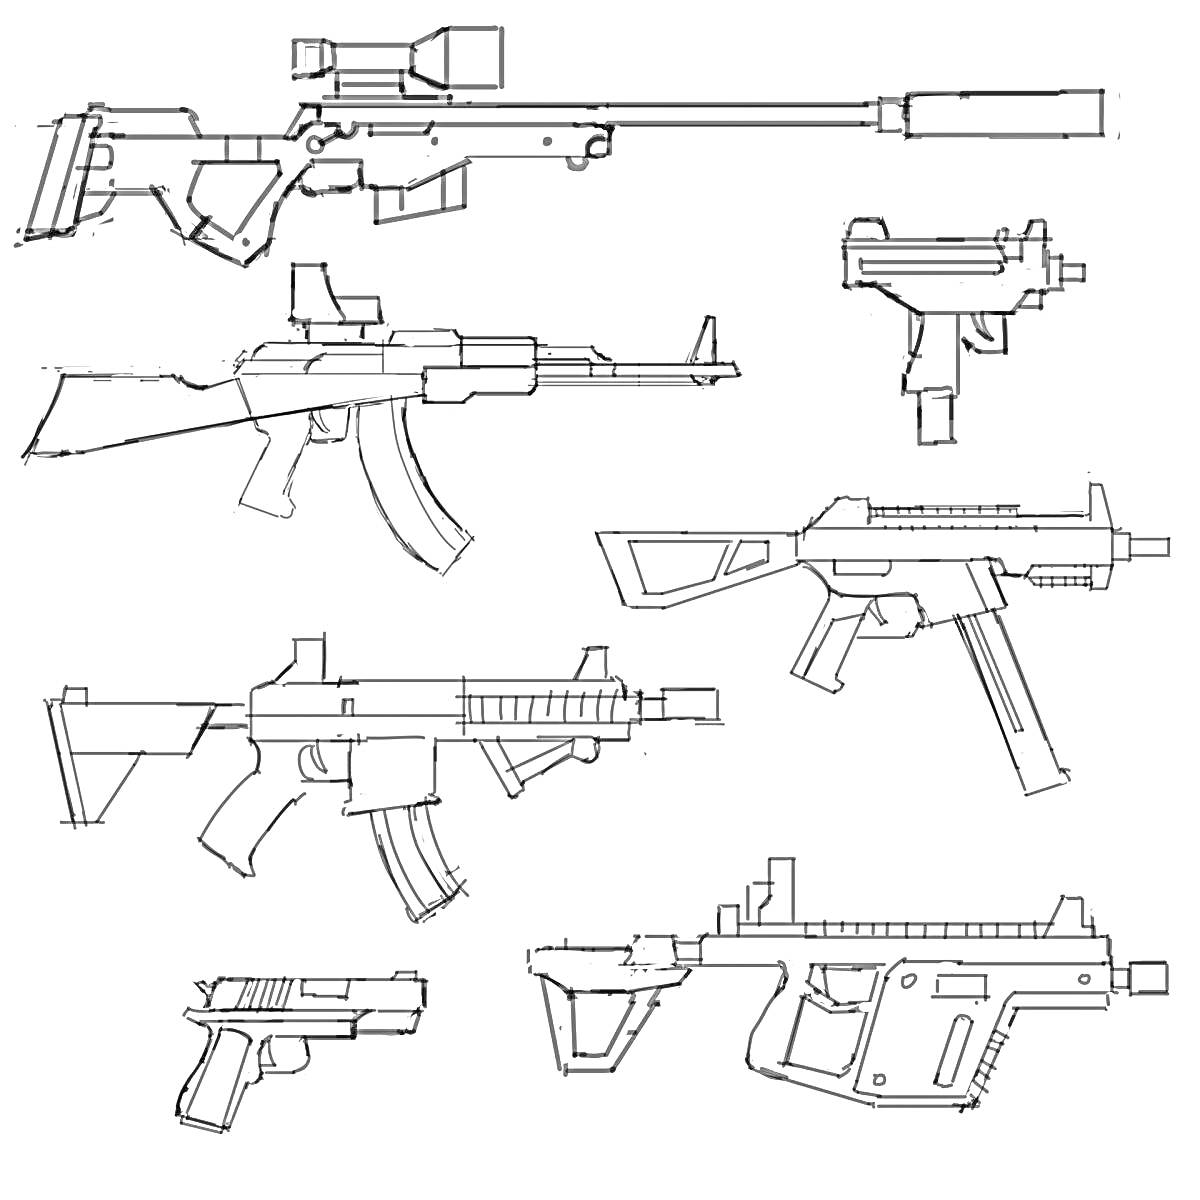 Раскраска Оружие из PUBG - винтовка с прицелом и глушителем, пистолет-пулемет, автоматическая винтовка, карабин, штурмовая винтовка, пистолет, пулемет с прикладом